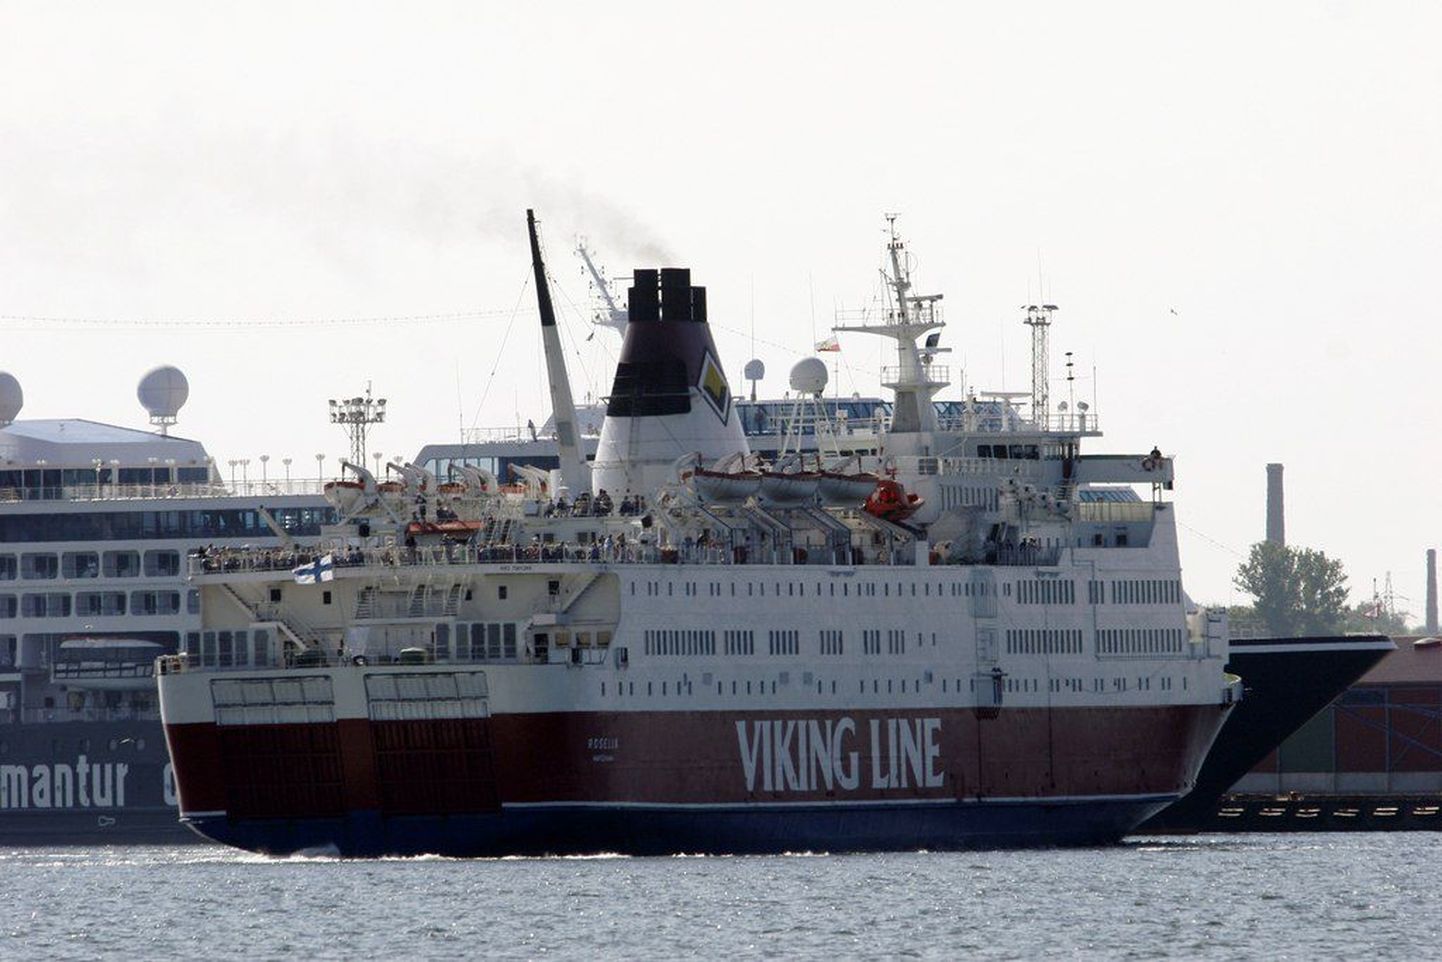 Viking Line'i reisiparvlaev Rosella